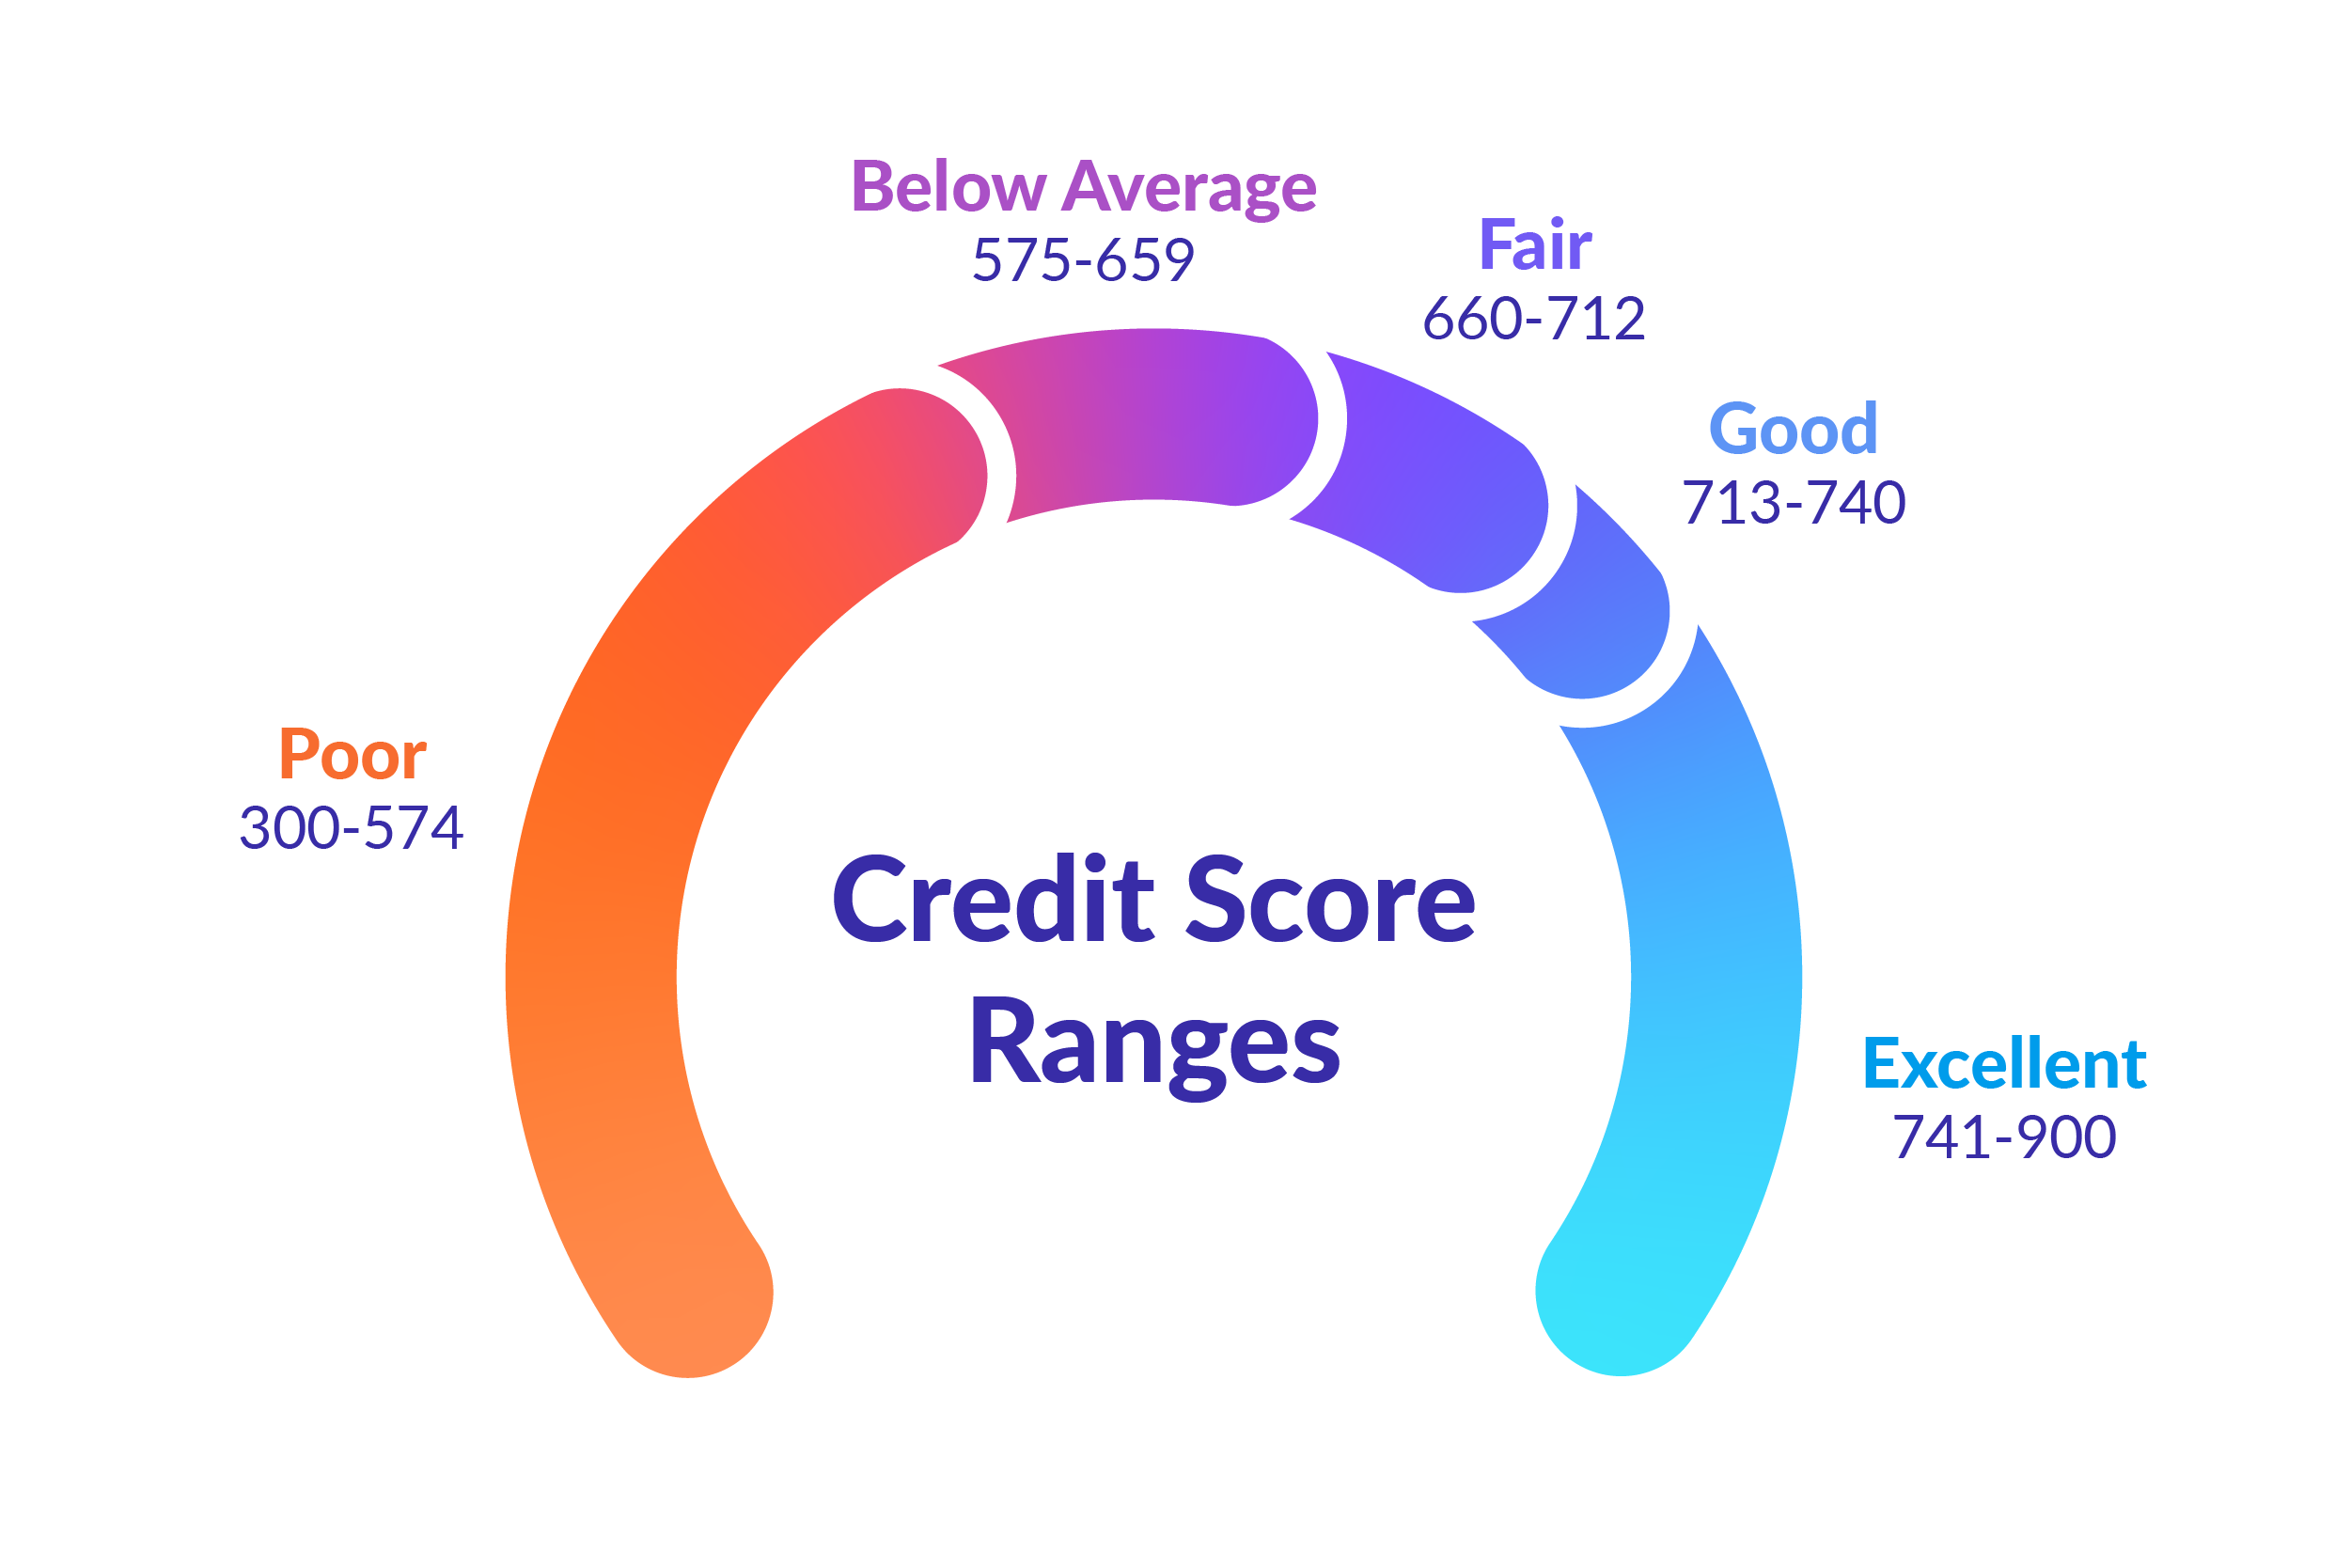 Credit score ranges. Poor: 300-574, Below average: 575-659, Fair; 660-712, Good; 713-740, Excellent: 741-900